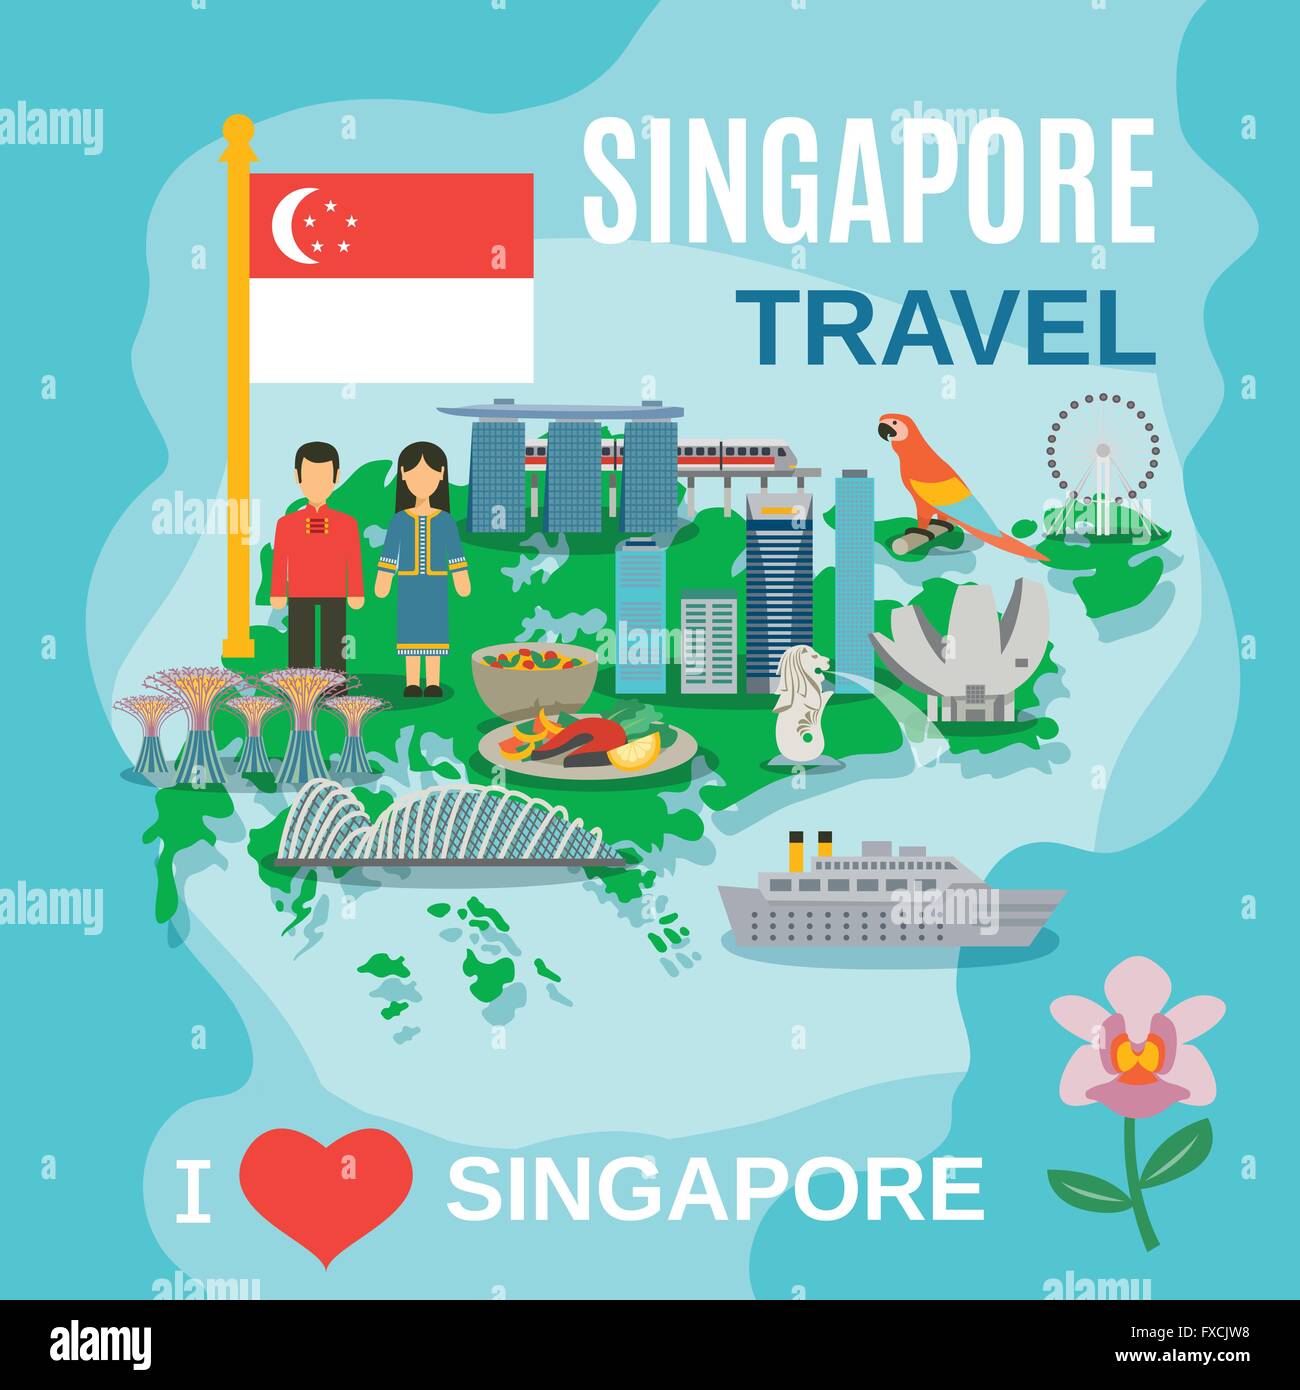 Voyage Singapour affiche des symboles nationaux Illustration de Vecteur